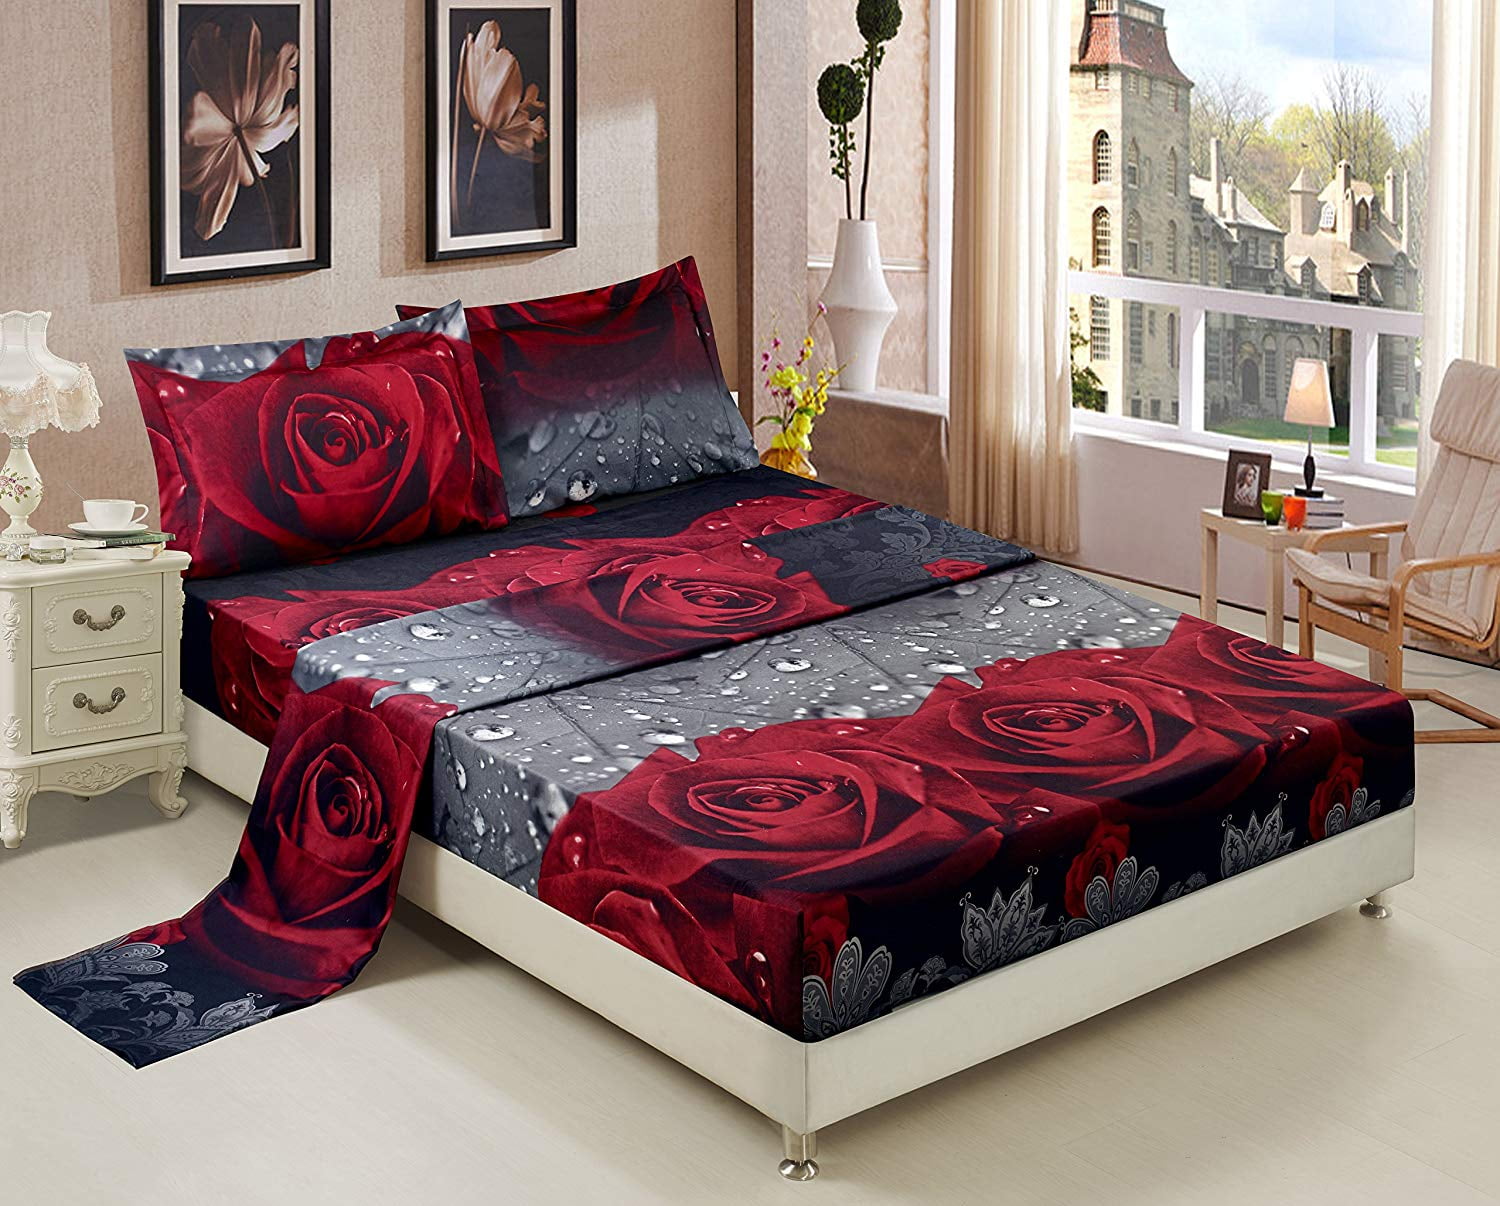 3d Bed Sheet Set King 4 Piece Rose, Best King Size Bed Sheets